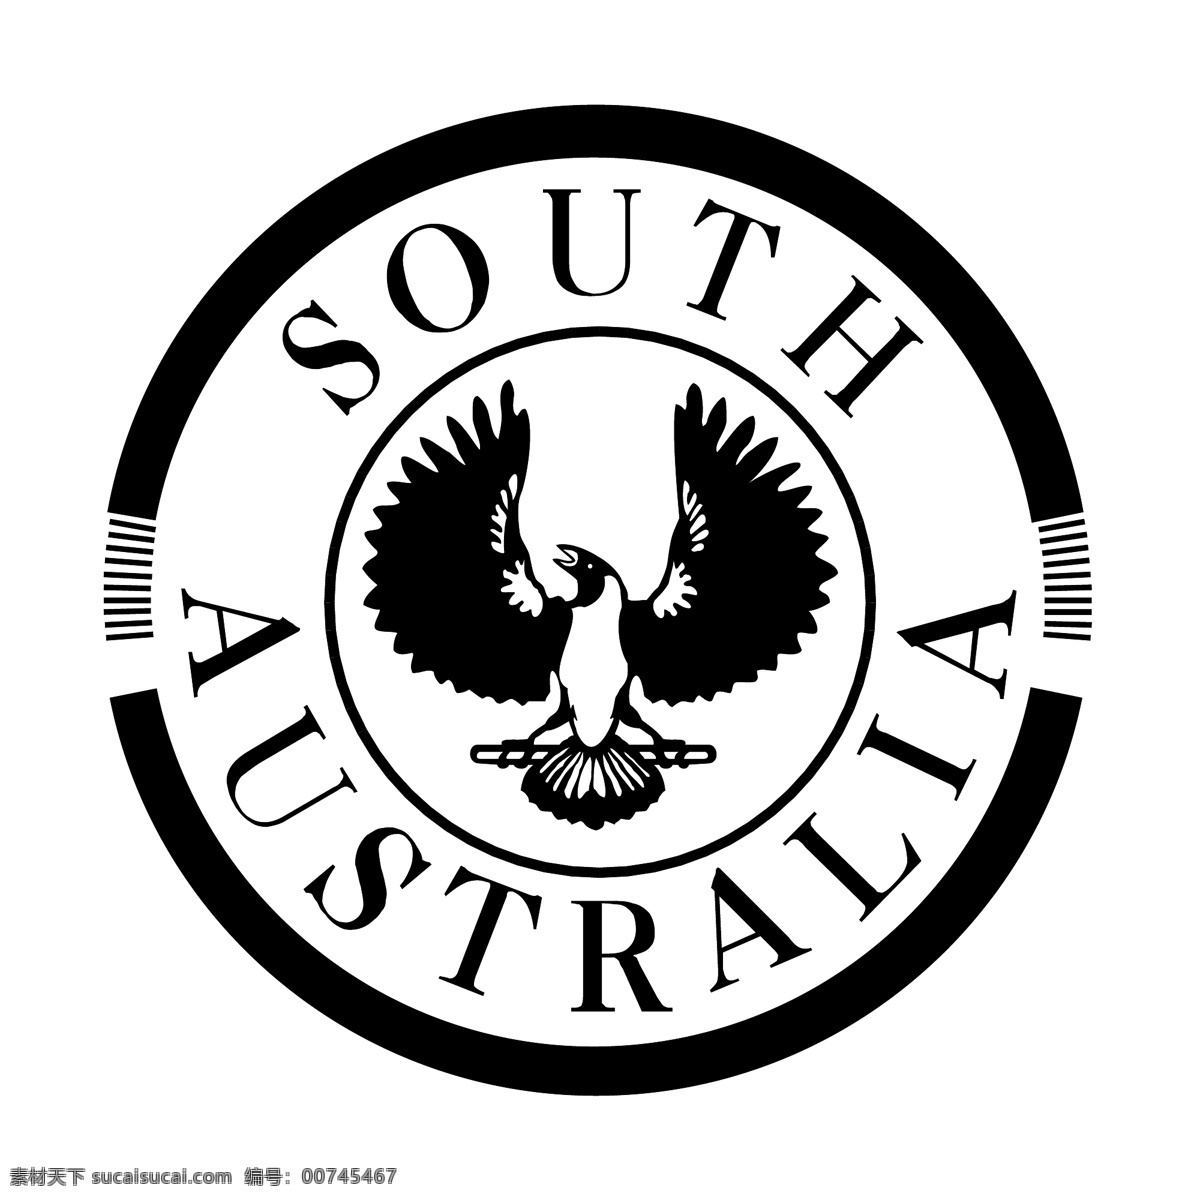 南 澳大利亚南部 澳大利亚 南部 地图 矢量 南澳大利亚 国旗 载体 蓝色